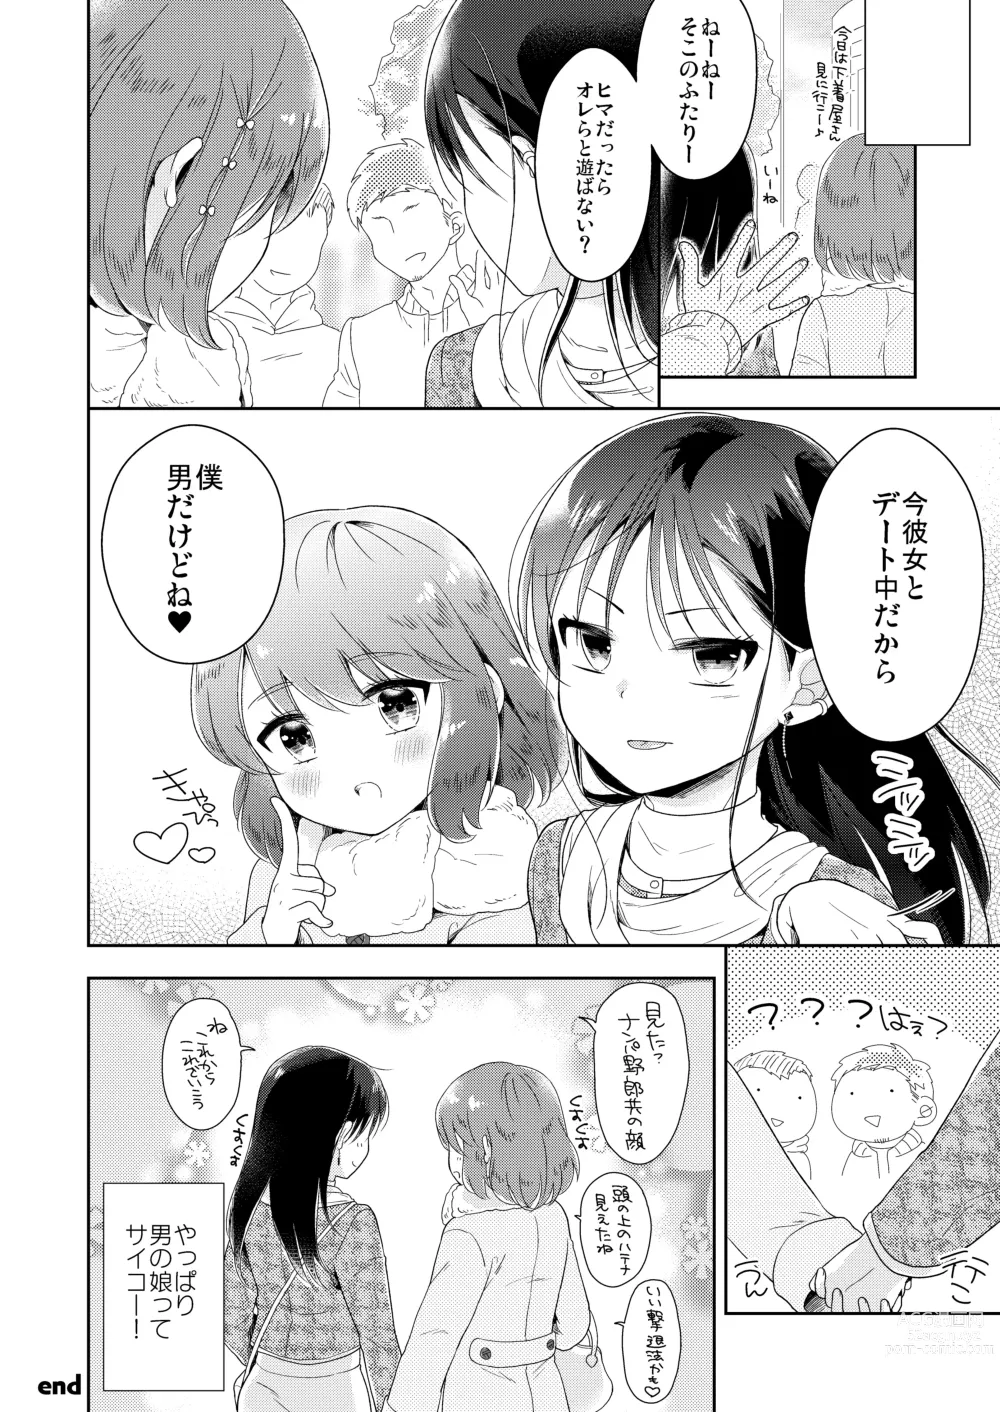 Page 29 of doujinshi Otokonoko x Otokonoko = Saikou